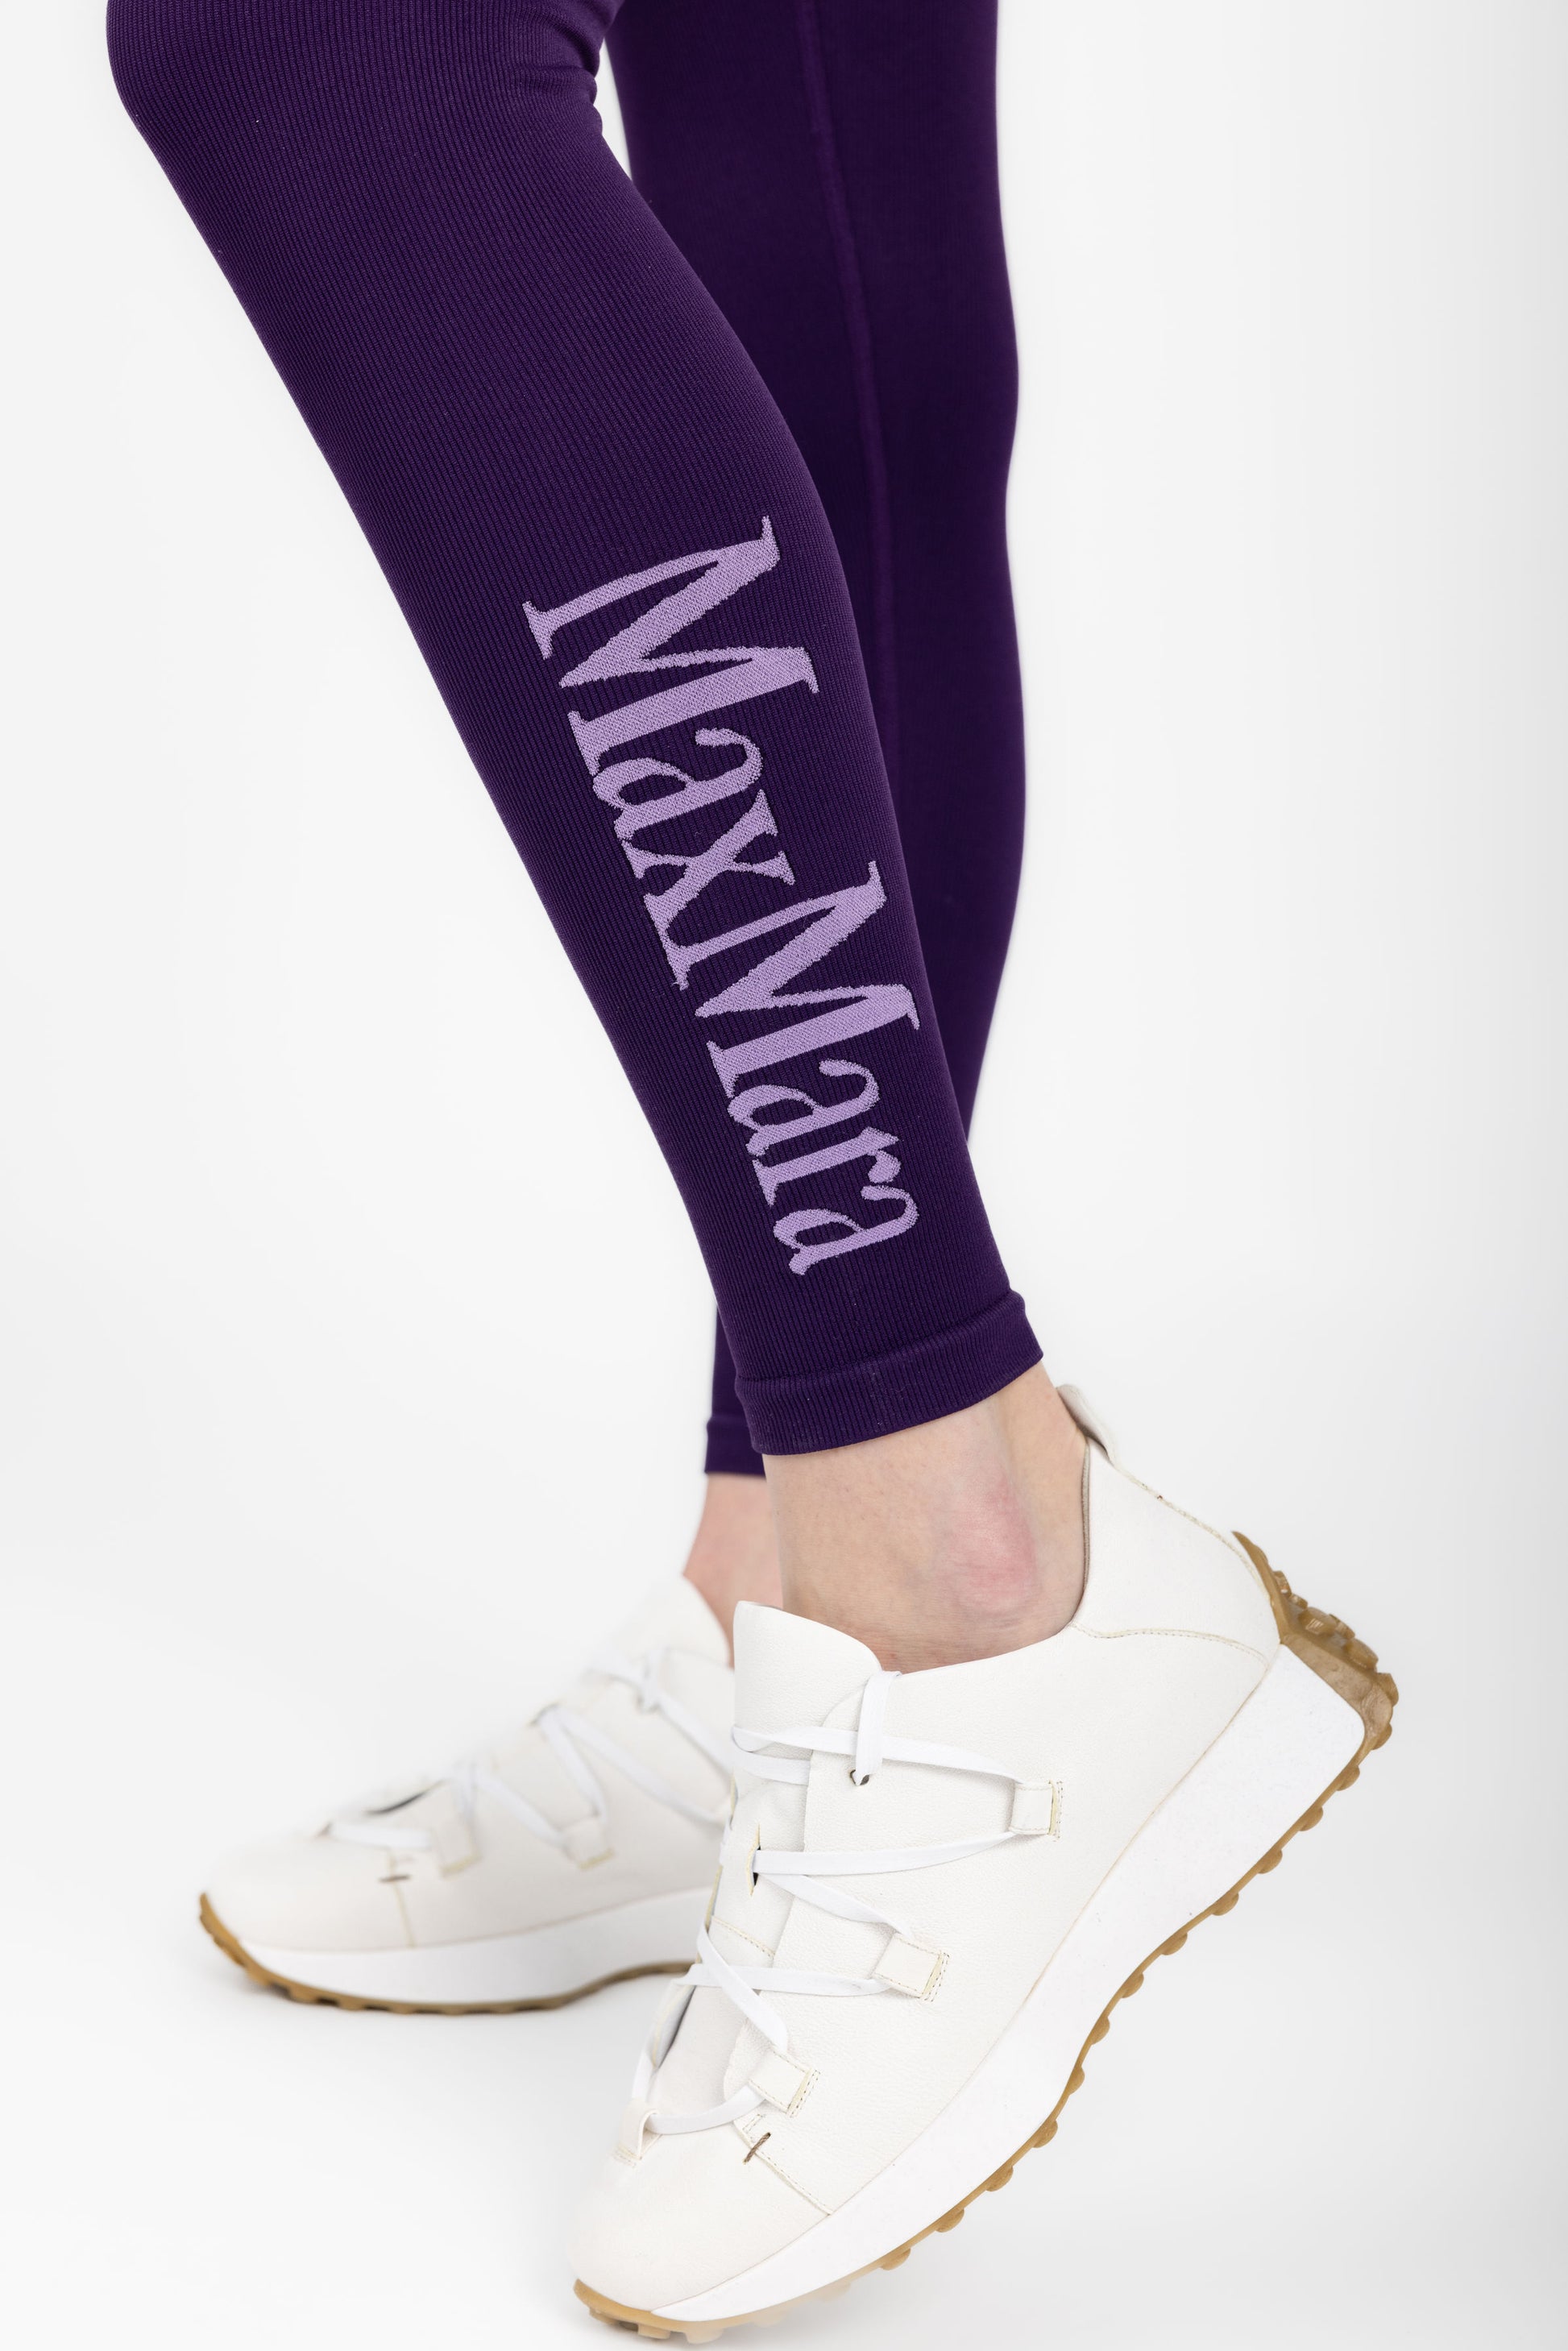 MAX MARA LEISURE Coccole Knit Legging in Purple